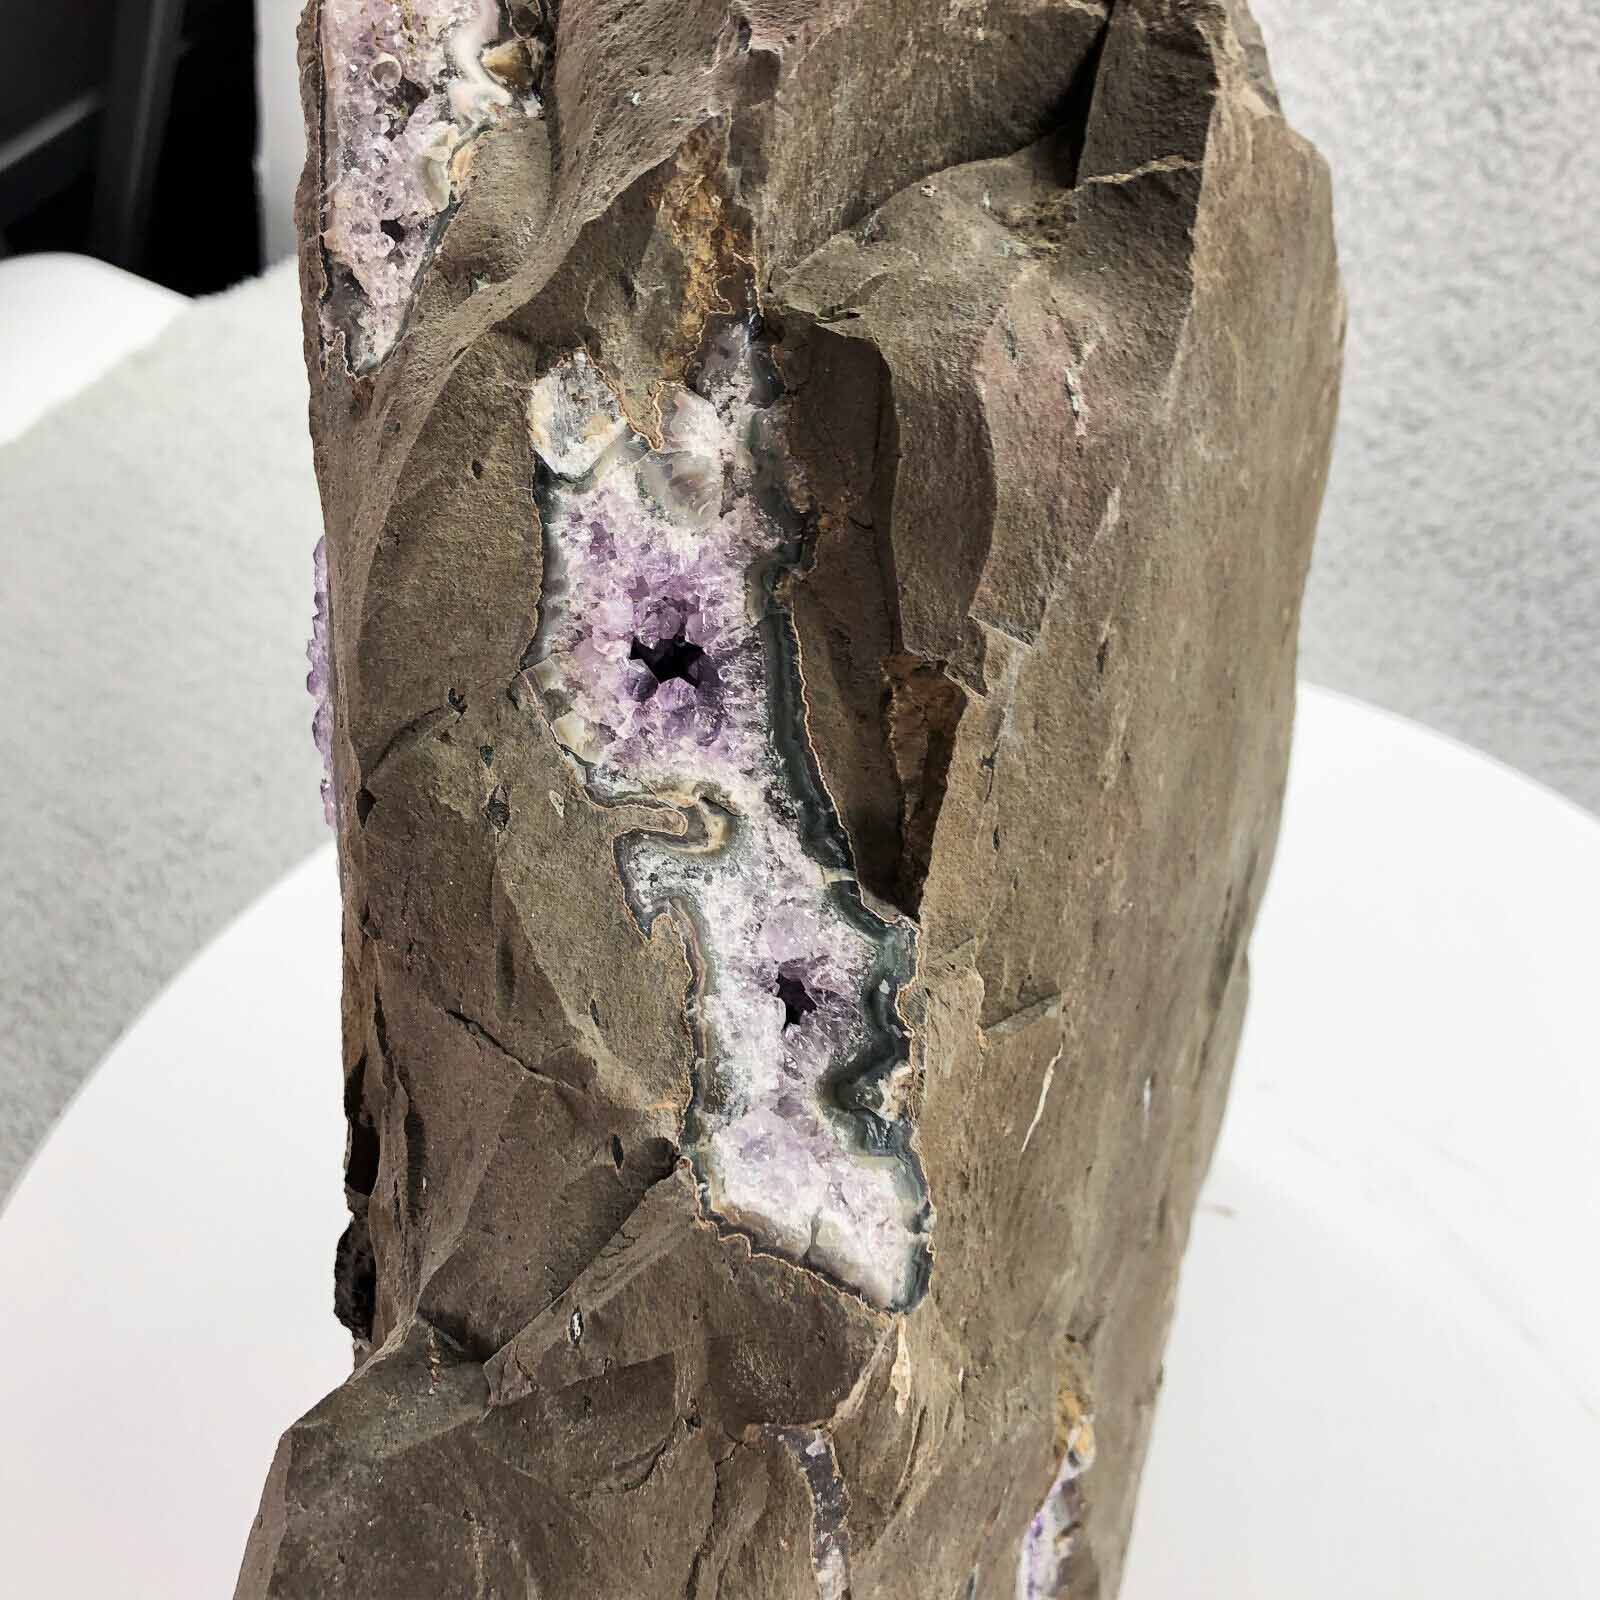 Amethyst Crystal Rock Purple Amethyst Stone Decor Natural Raw 53lb